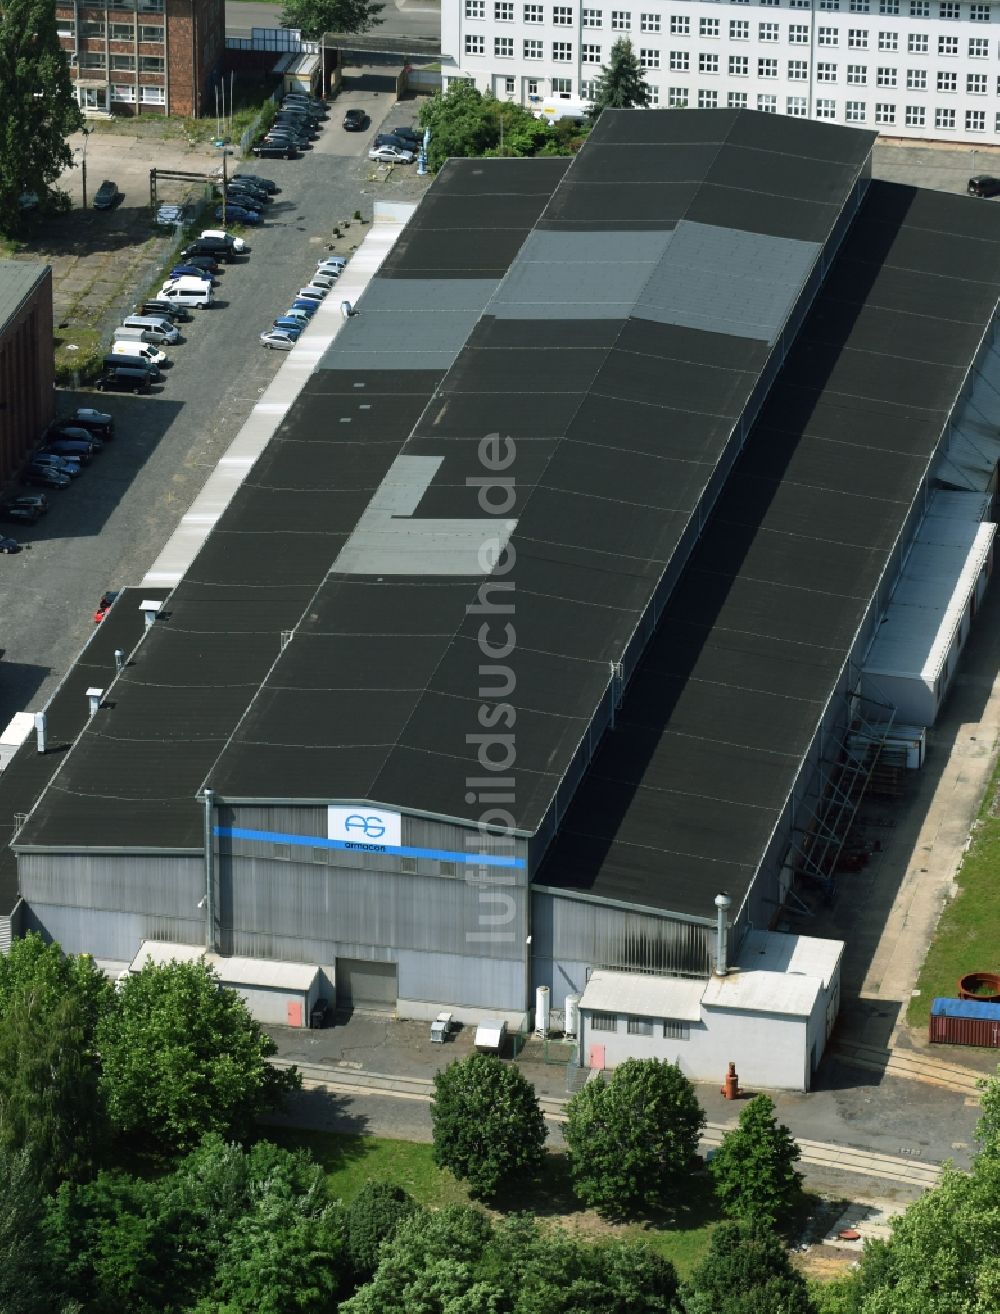 Magdeburg von oben - Werksgelände der armacon-systems GmbH und S+S Armaturen GmbH & Co.KG in Magdeburg im Bundesland Sachsen-Anhalt